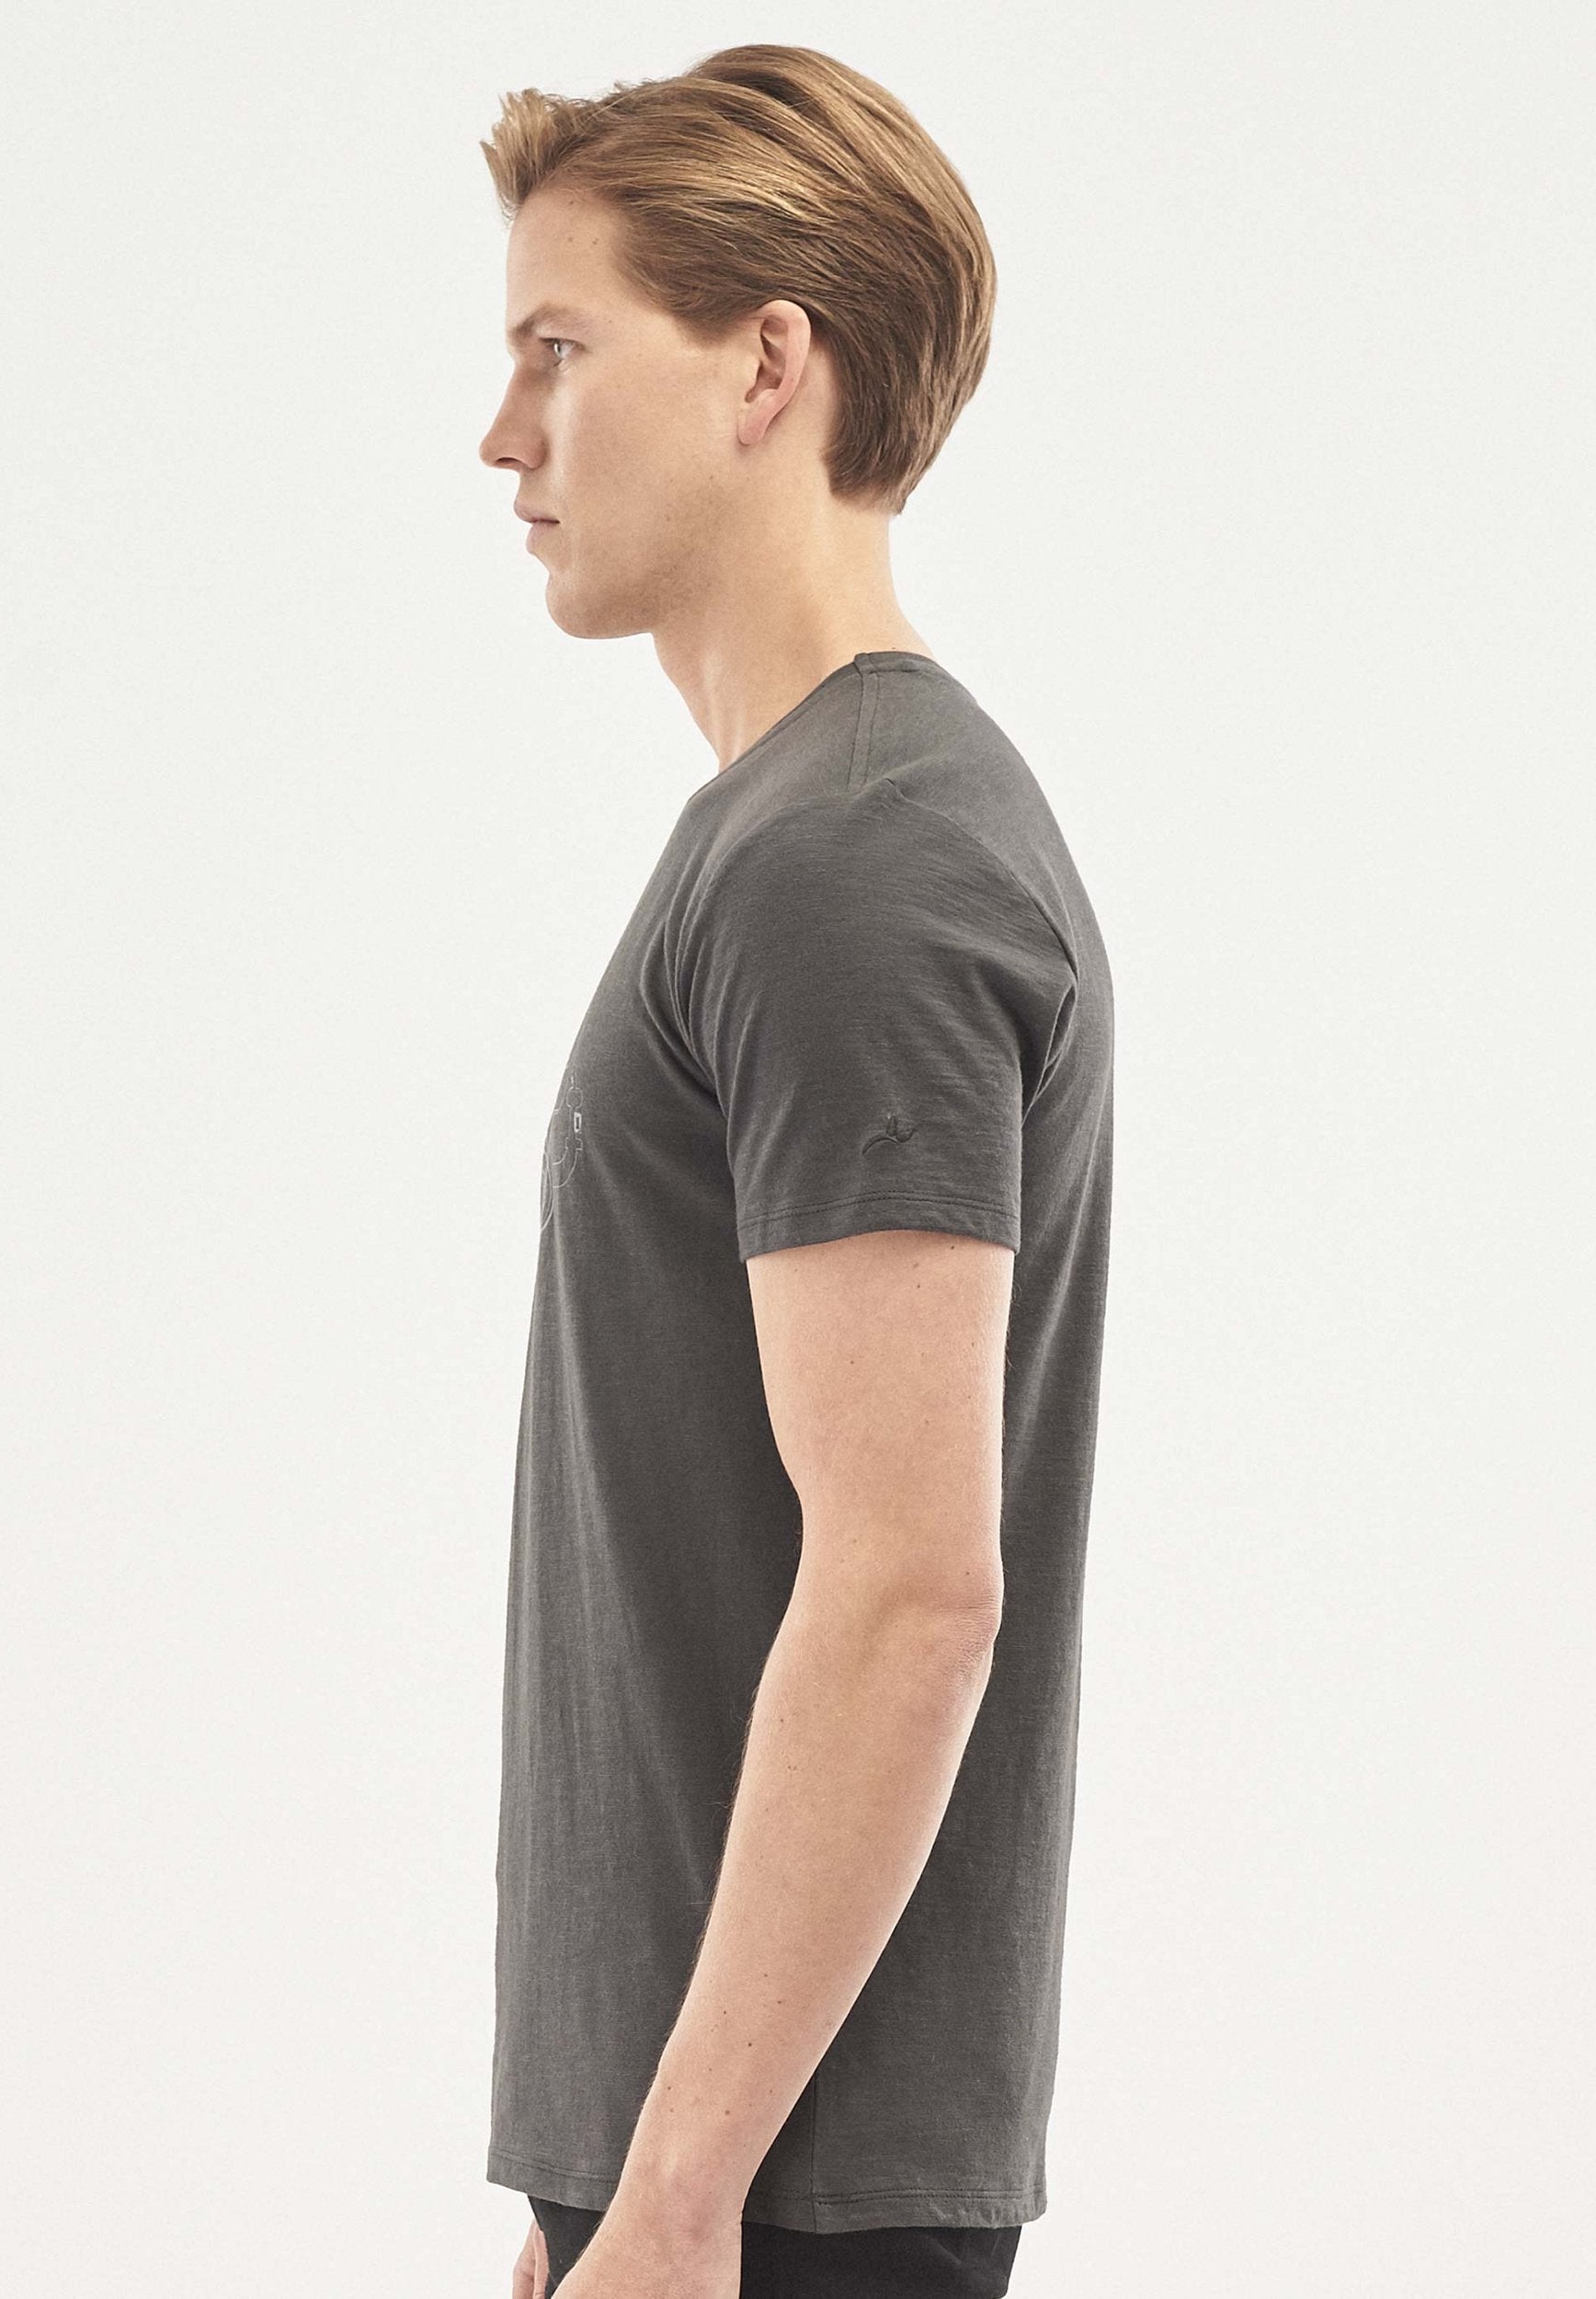 T-Shirt aus Bio-Baumwolle mit Camper-Van-Print